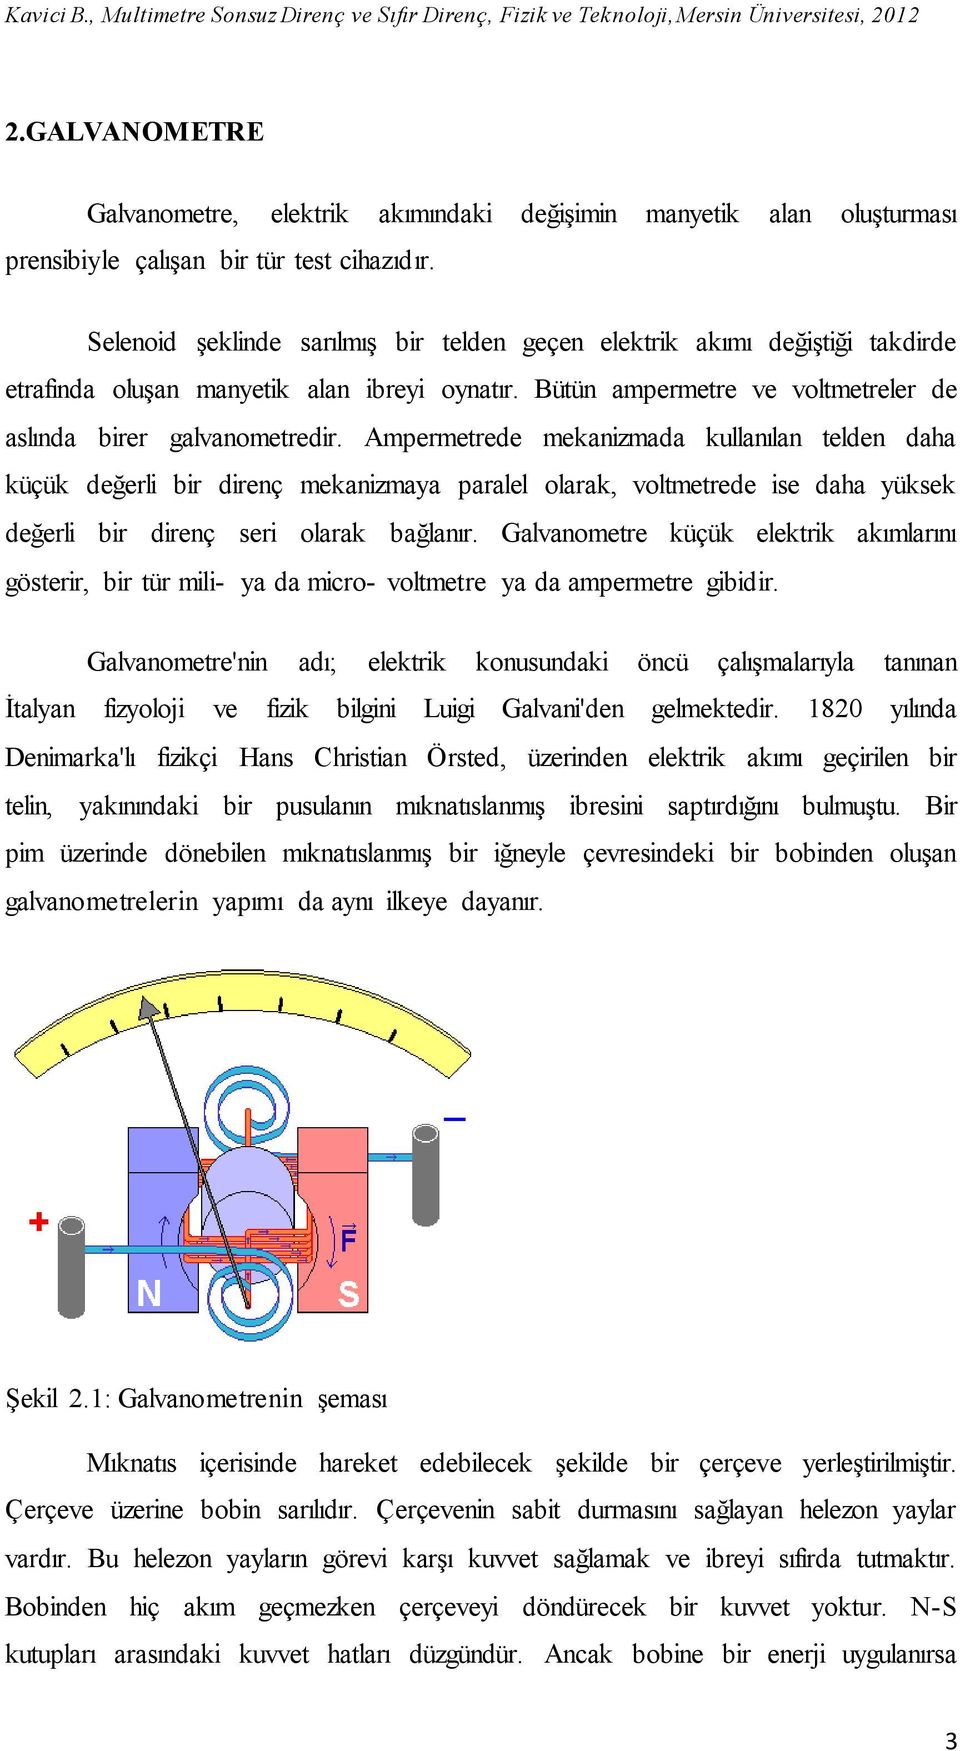 Ampermetrede mekanizmada kullanılan telden daha küçük değerli bir direnç mekanizmaya paralel olarak, voltmetrede ise daha yüksek değerli bir direnç seri olarak bağlanır.